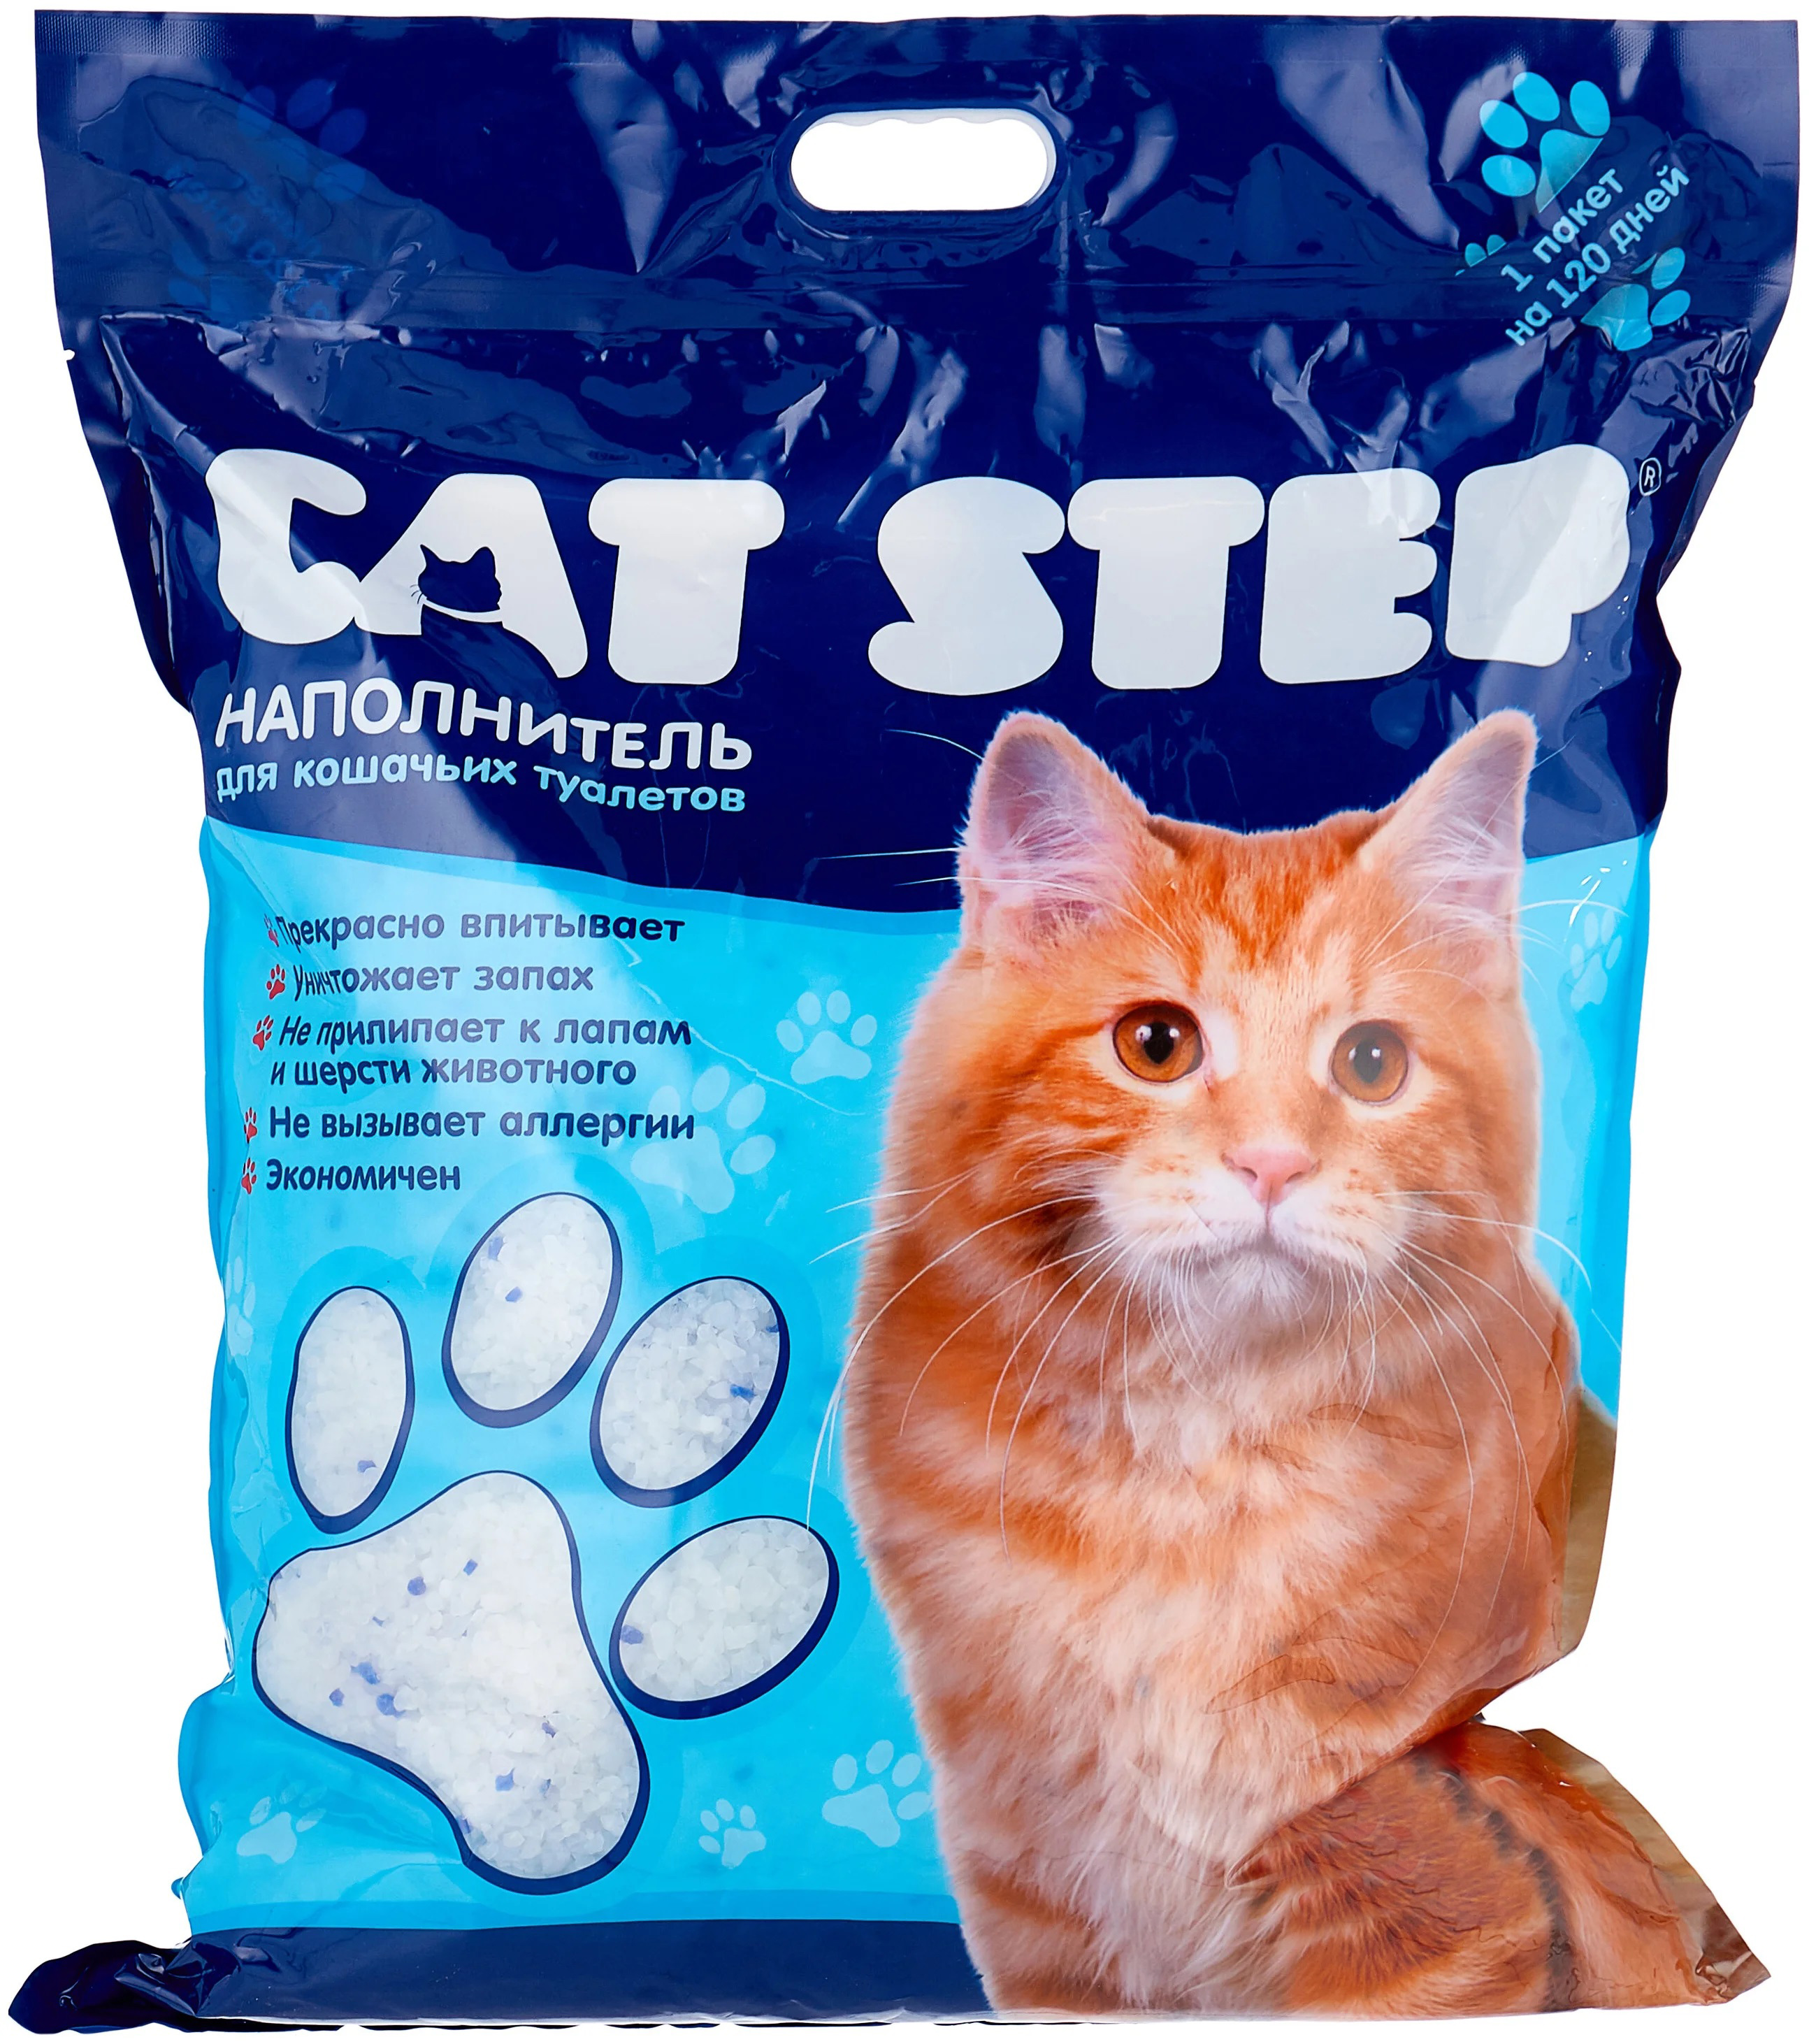 Наполнитель силикагелевый для кошачьего туалета Cat step 3.8 л 1.67 кг